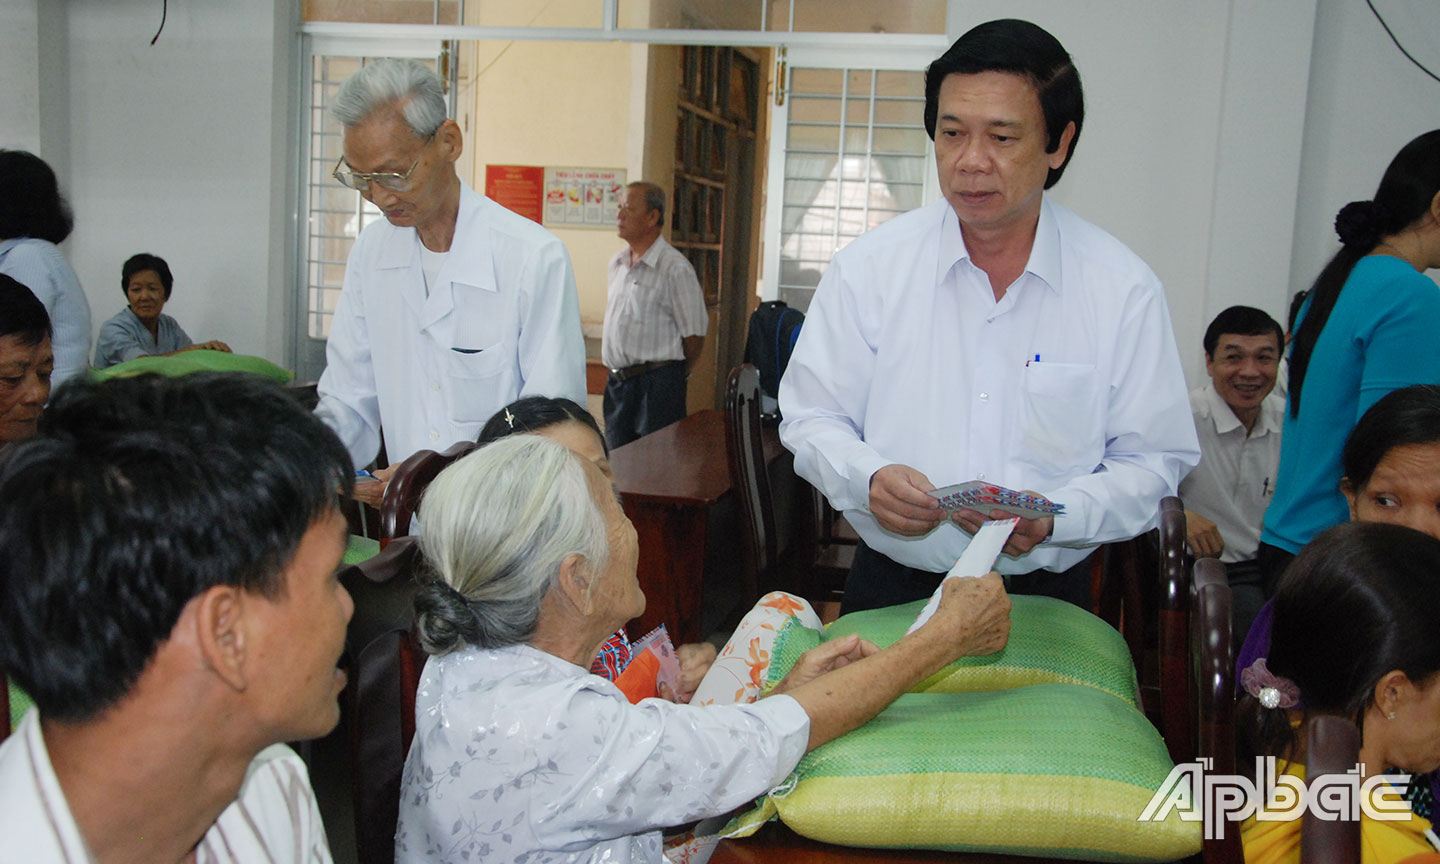 Đồng chí Nguyễn Văn Danh, Ủy viên Ban Chấp hành Trung ương Đảng, Bí thư Tỉnh ủy, Chủ tịch HĐND tỉnh trao quà cho hộ nghèo ở thị trấn Cái Bè.